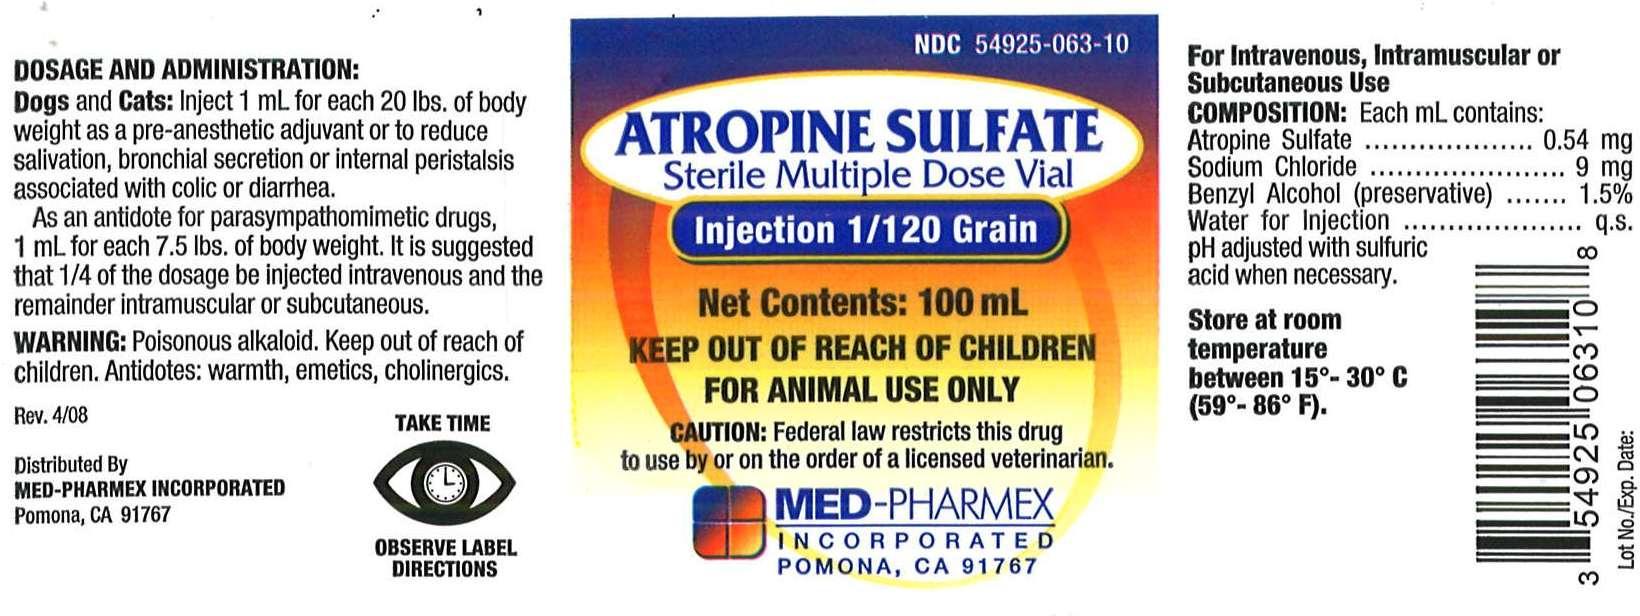 Atropine Sulfate 100 mL